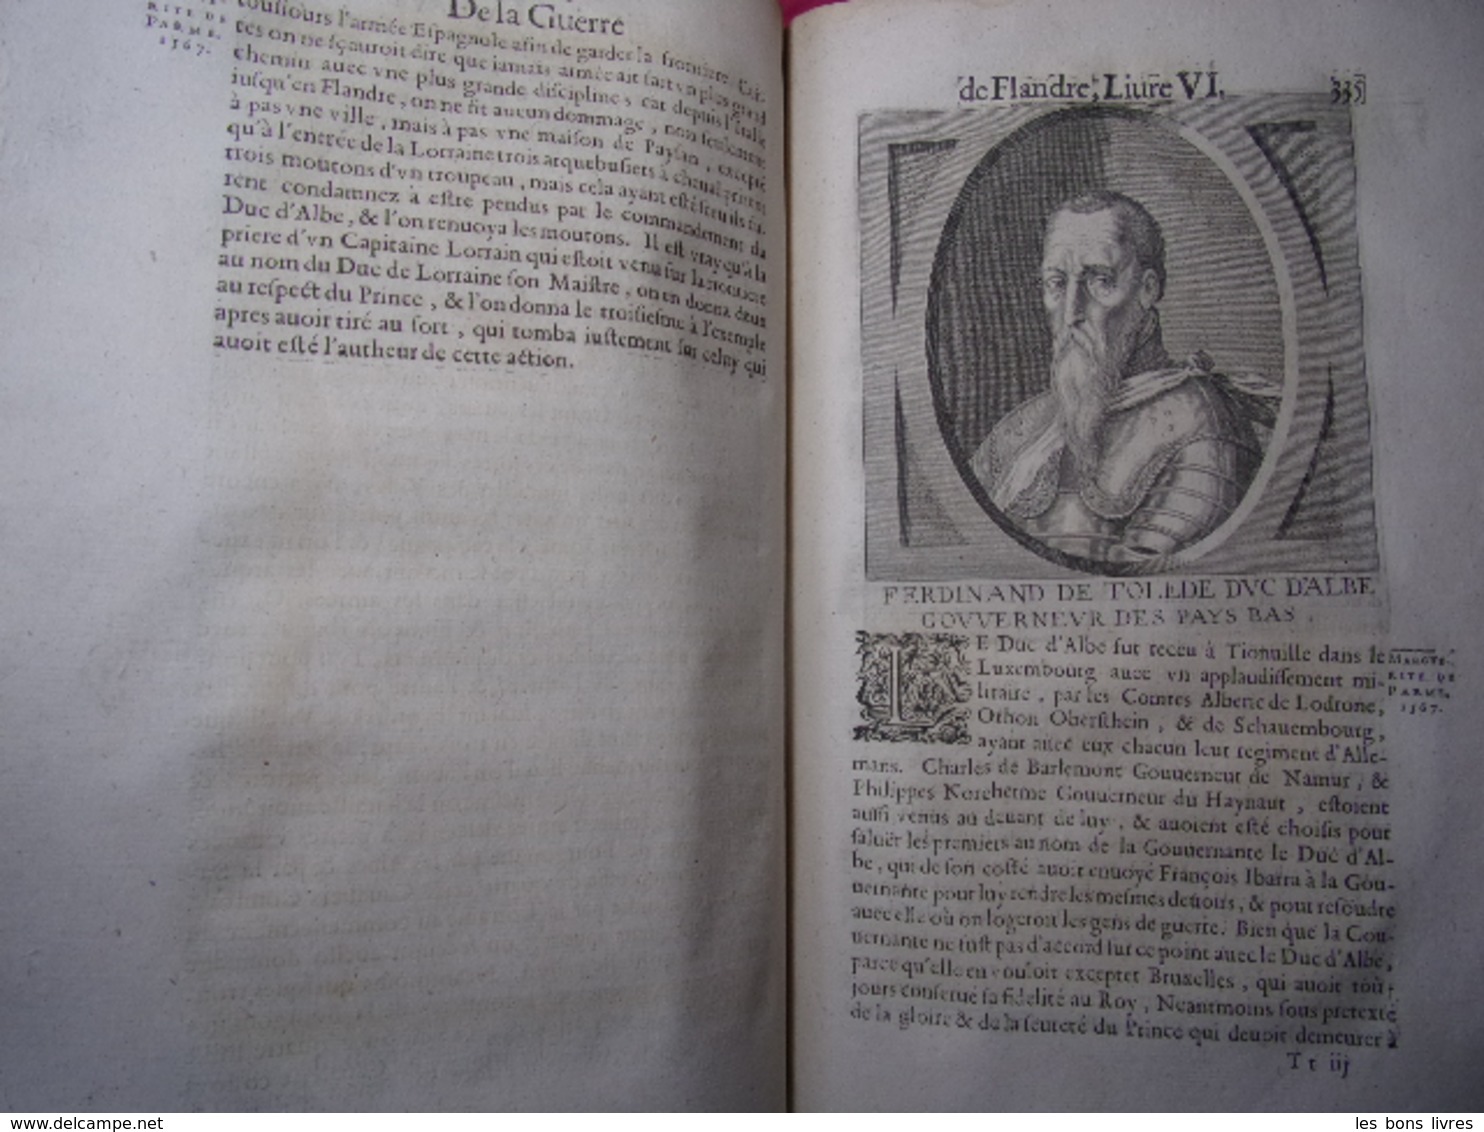 1659. Famianus Strada Histoire de la Guerre des Flandres 2/2vols in folio